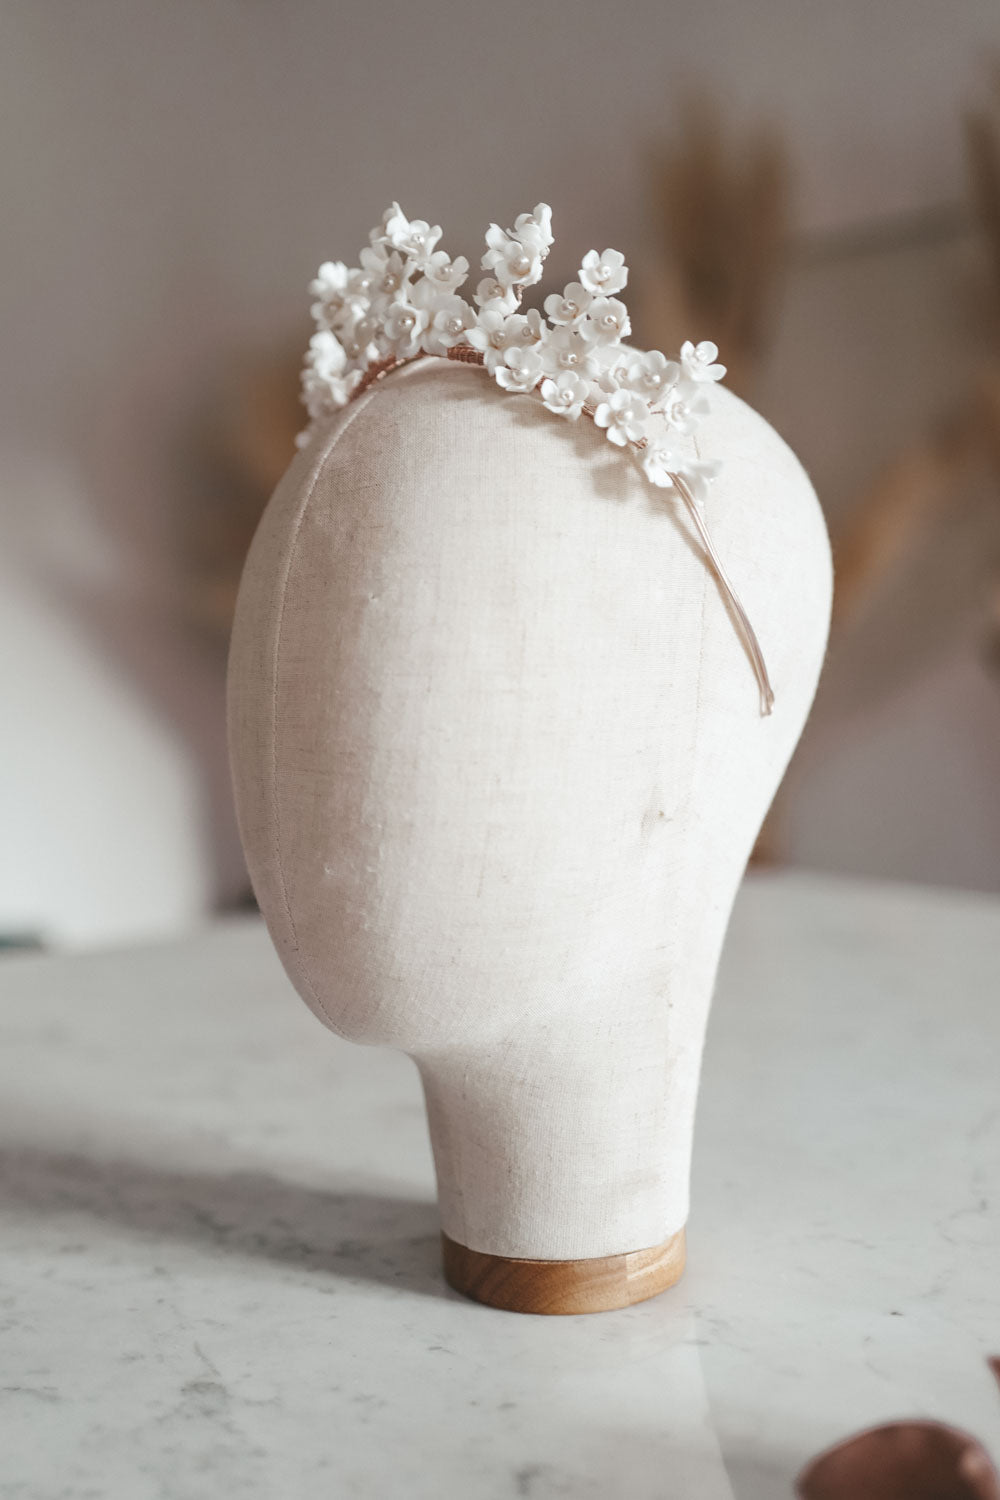 White Blossom Headpiece